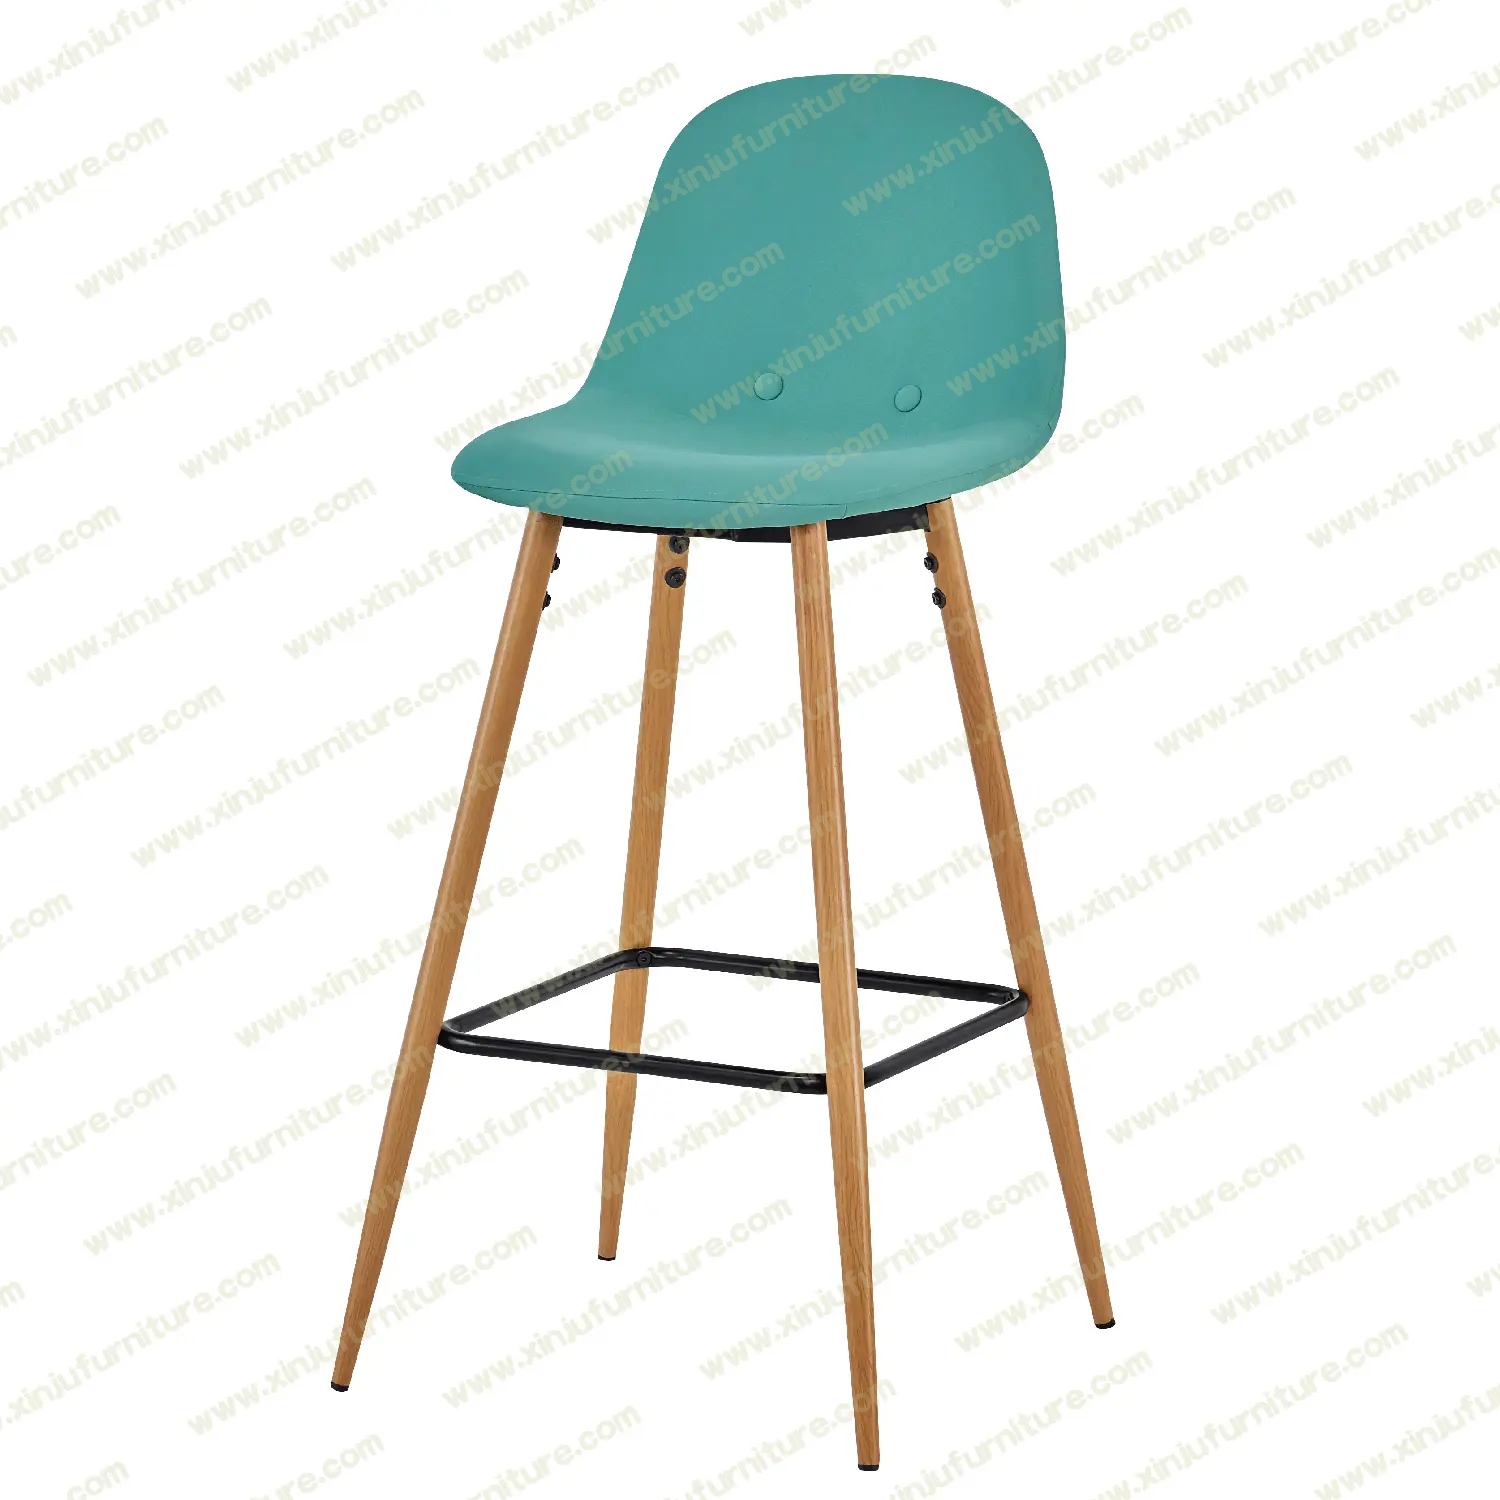 Wood grain fashion high bar chair